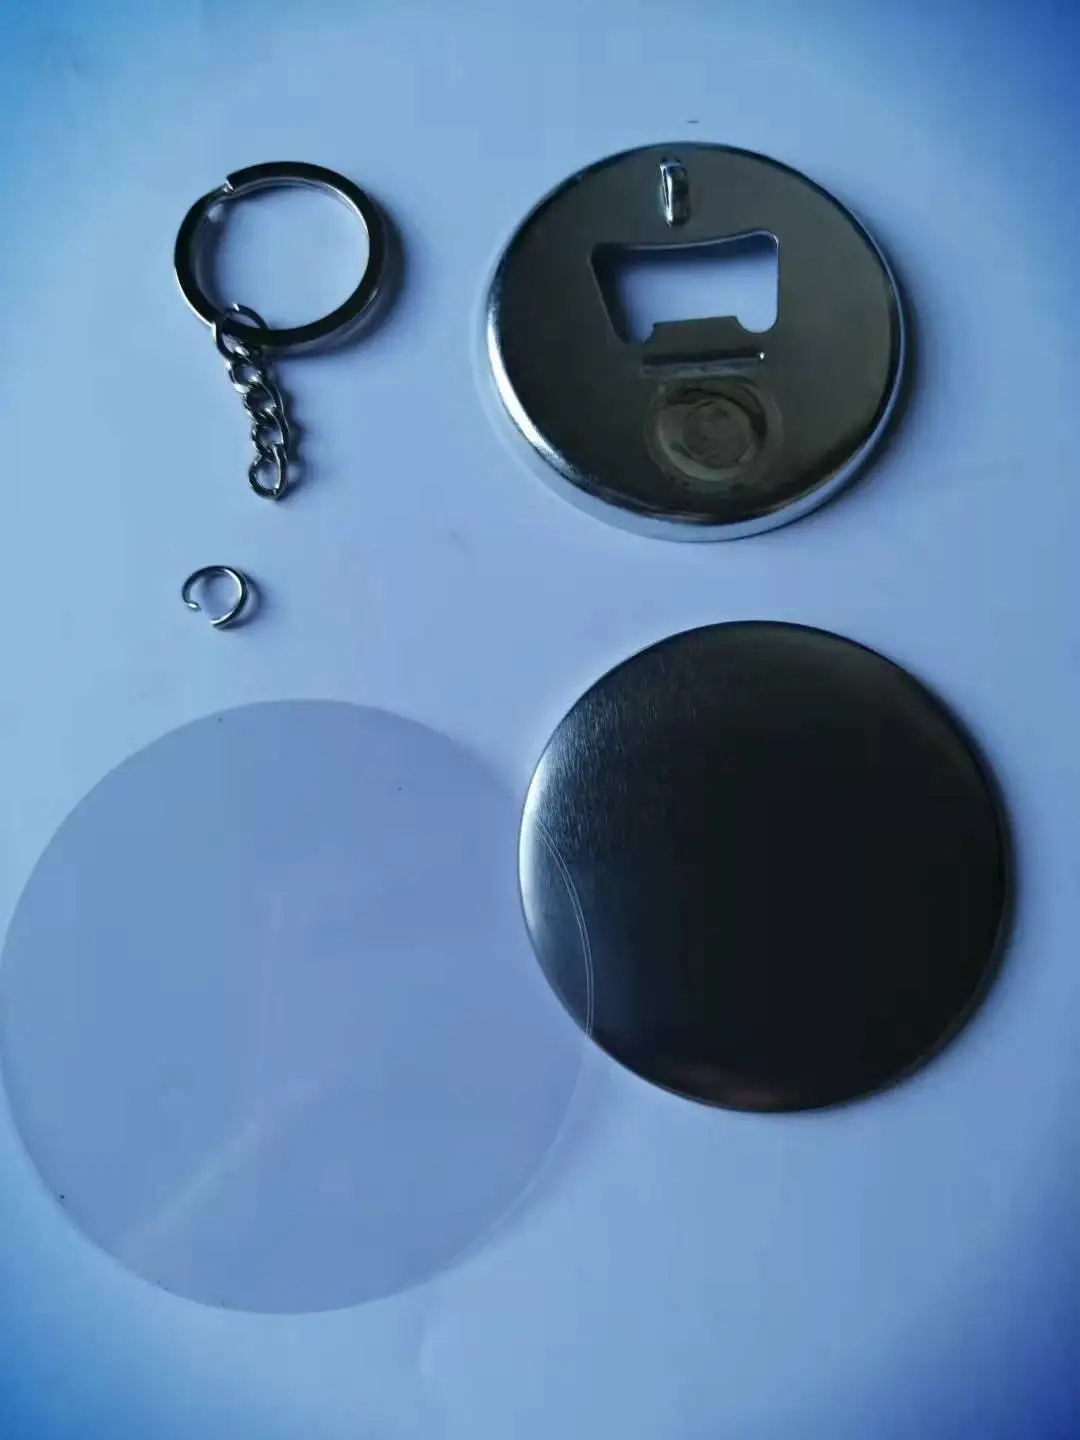 100 шт. 58 мм жестяная открывалка для бутылок Магнитная кнопка для ключей значки открывалка для пивных бутылок кнопка для ключей значки принад... от AliExpress RU&CIS NEW